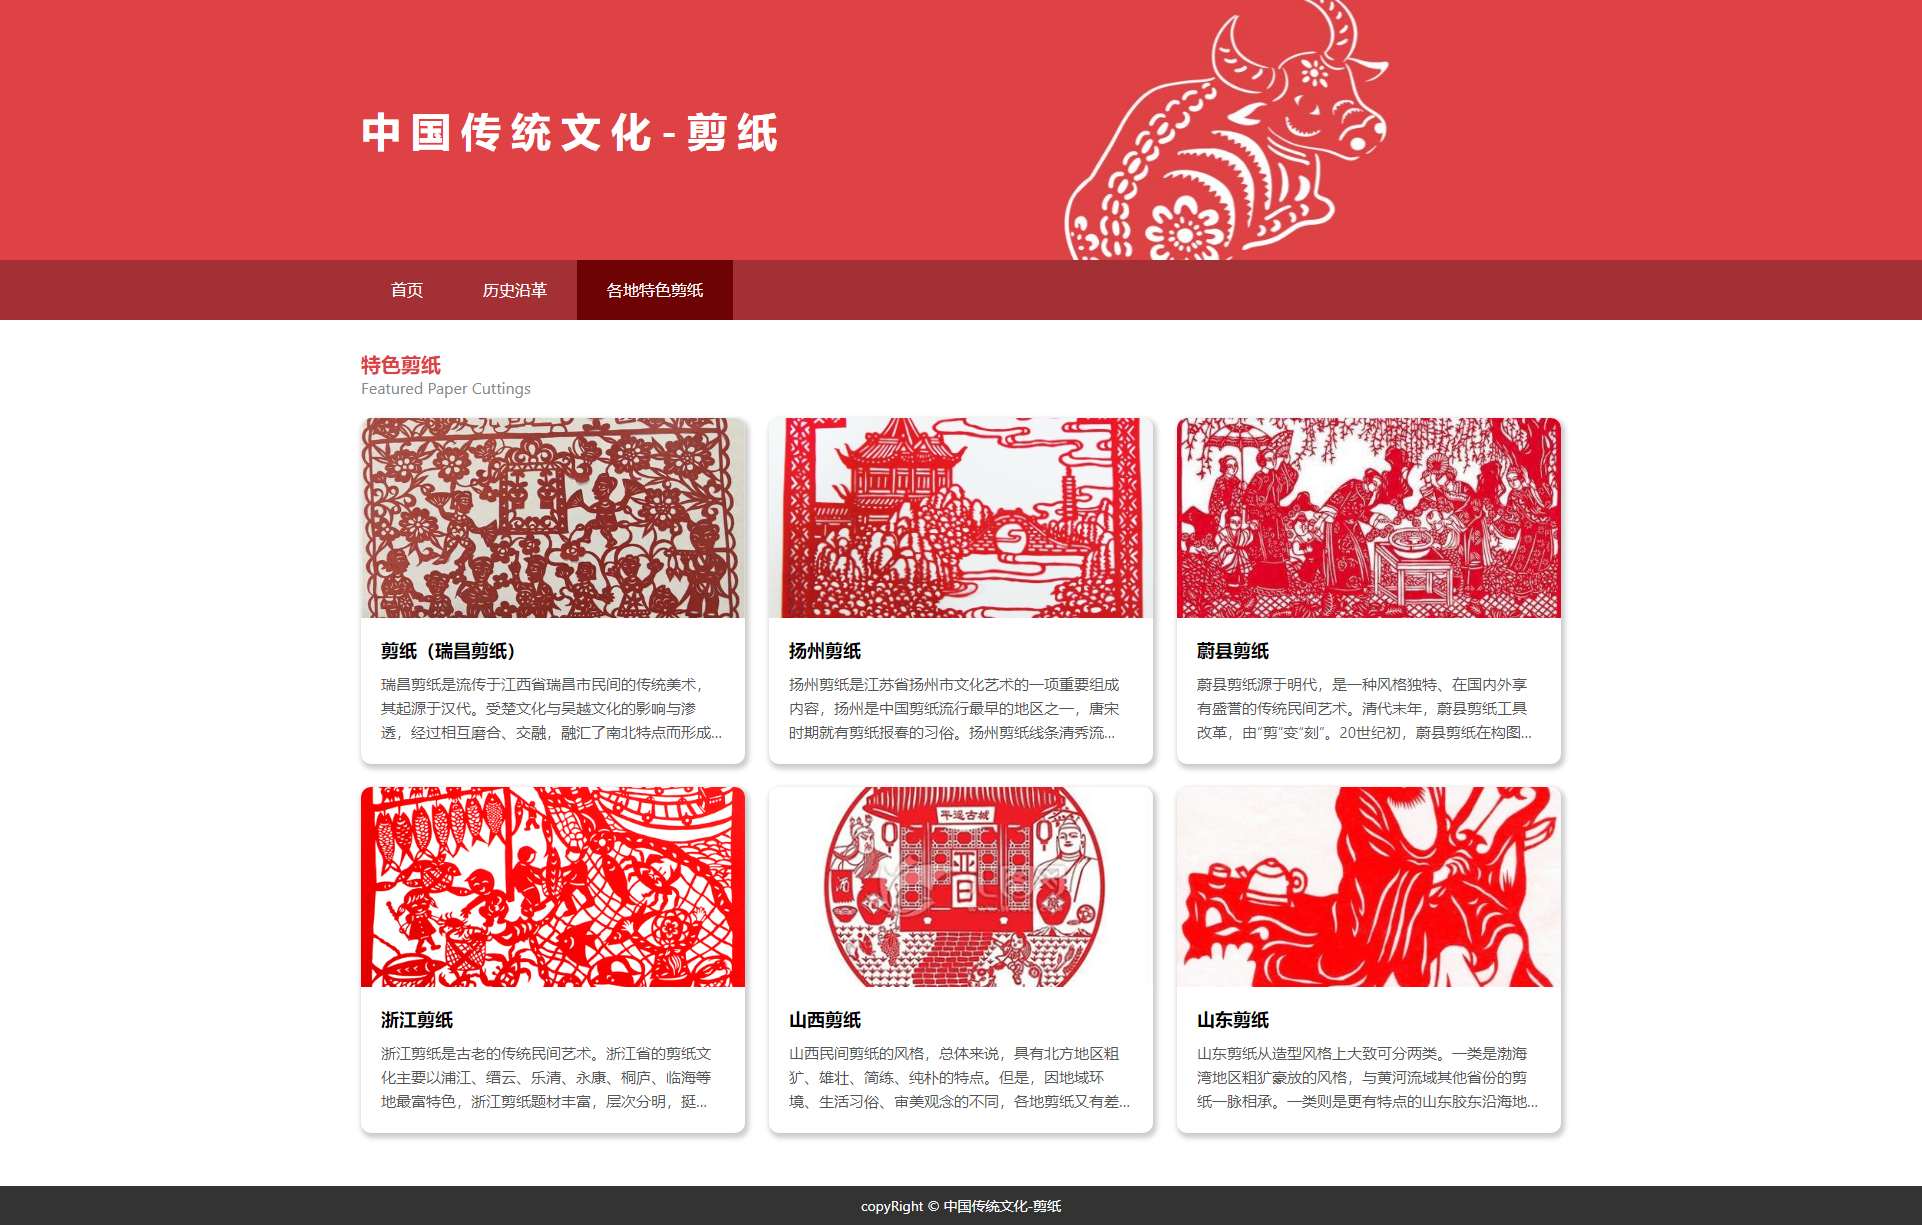 【html+css】中国传统文化-剪纸网页 3页